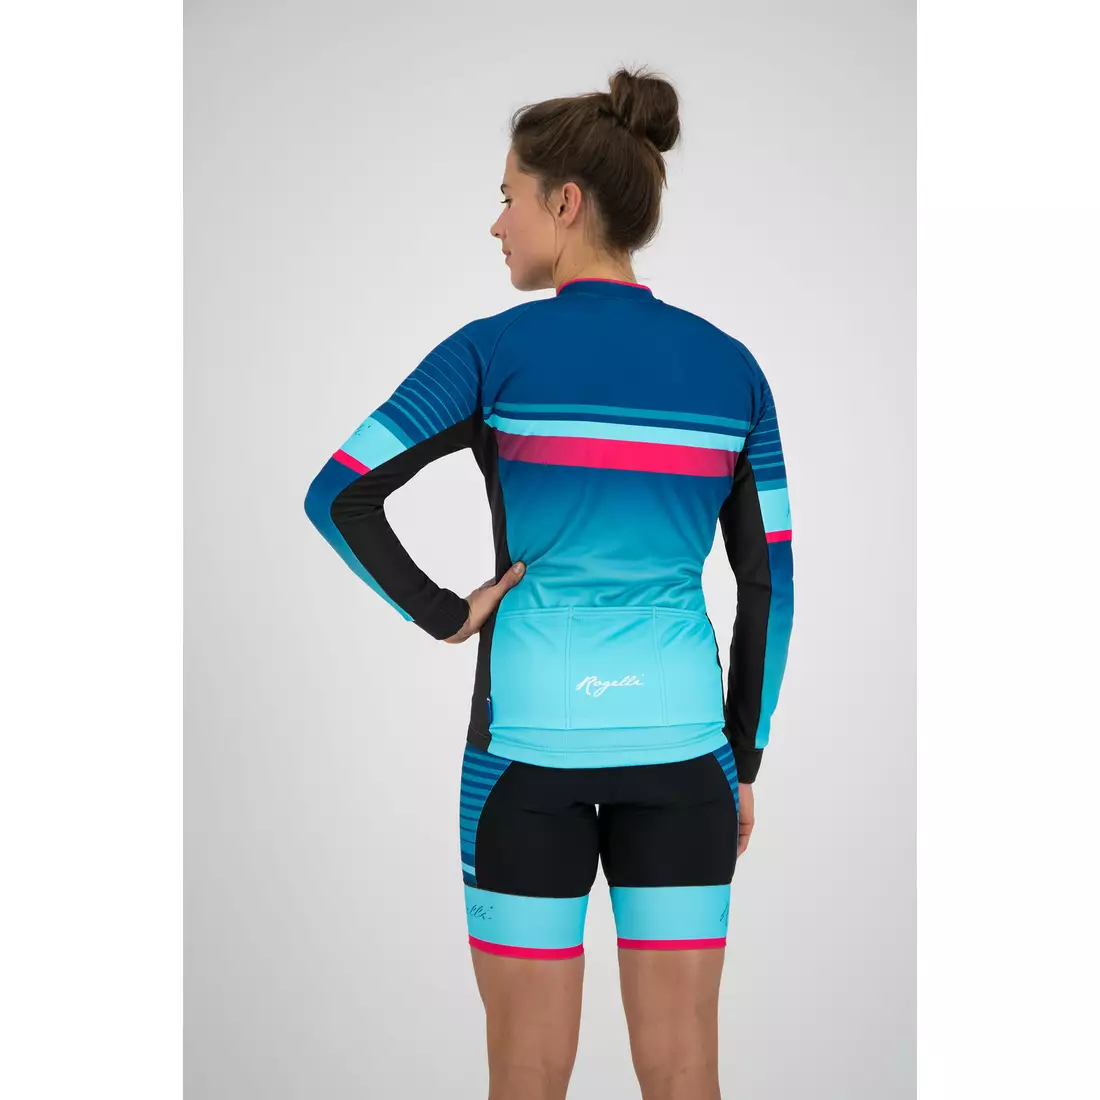 Rogelli Impress 010.190 Dámský cyklistický dres modrý / růžový